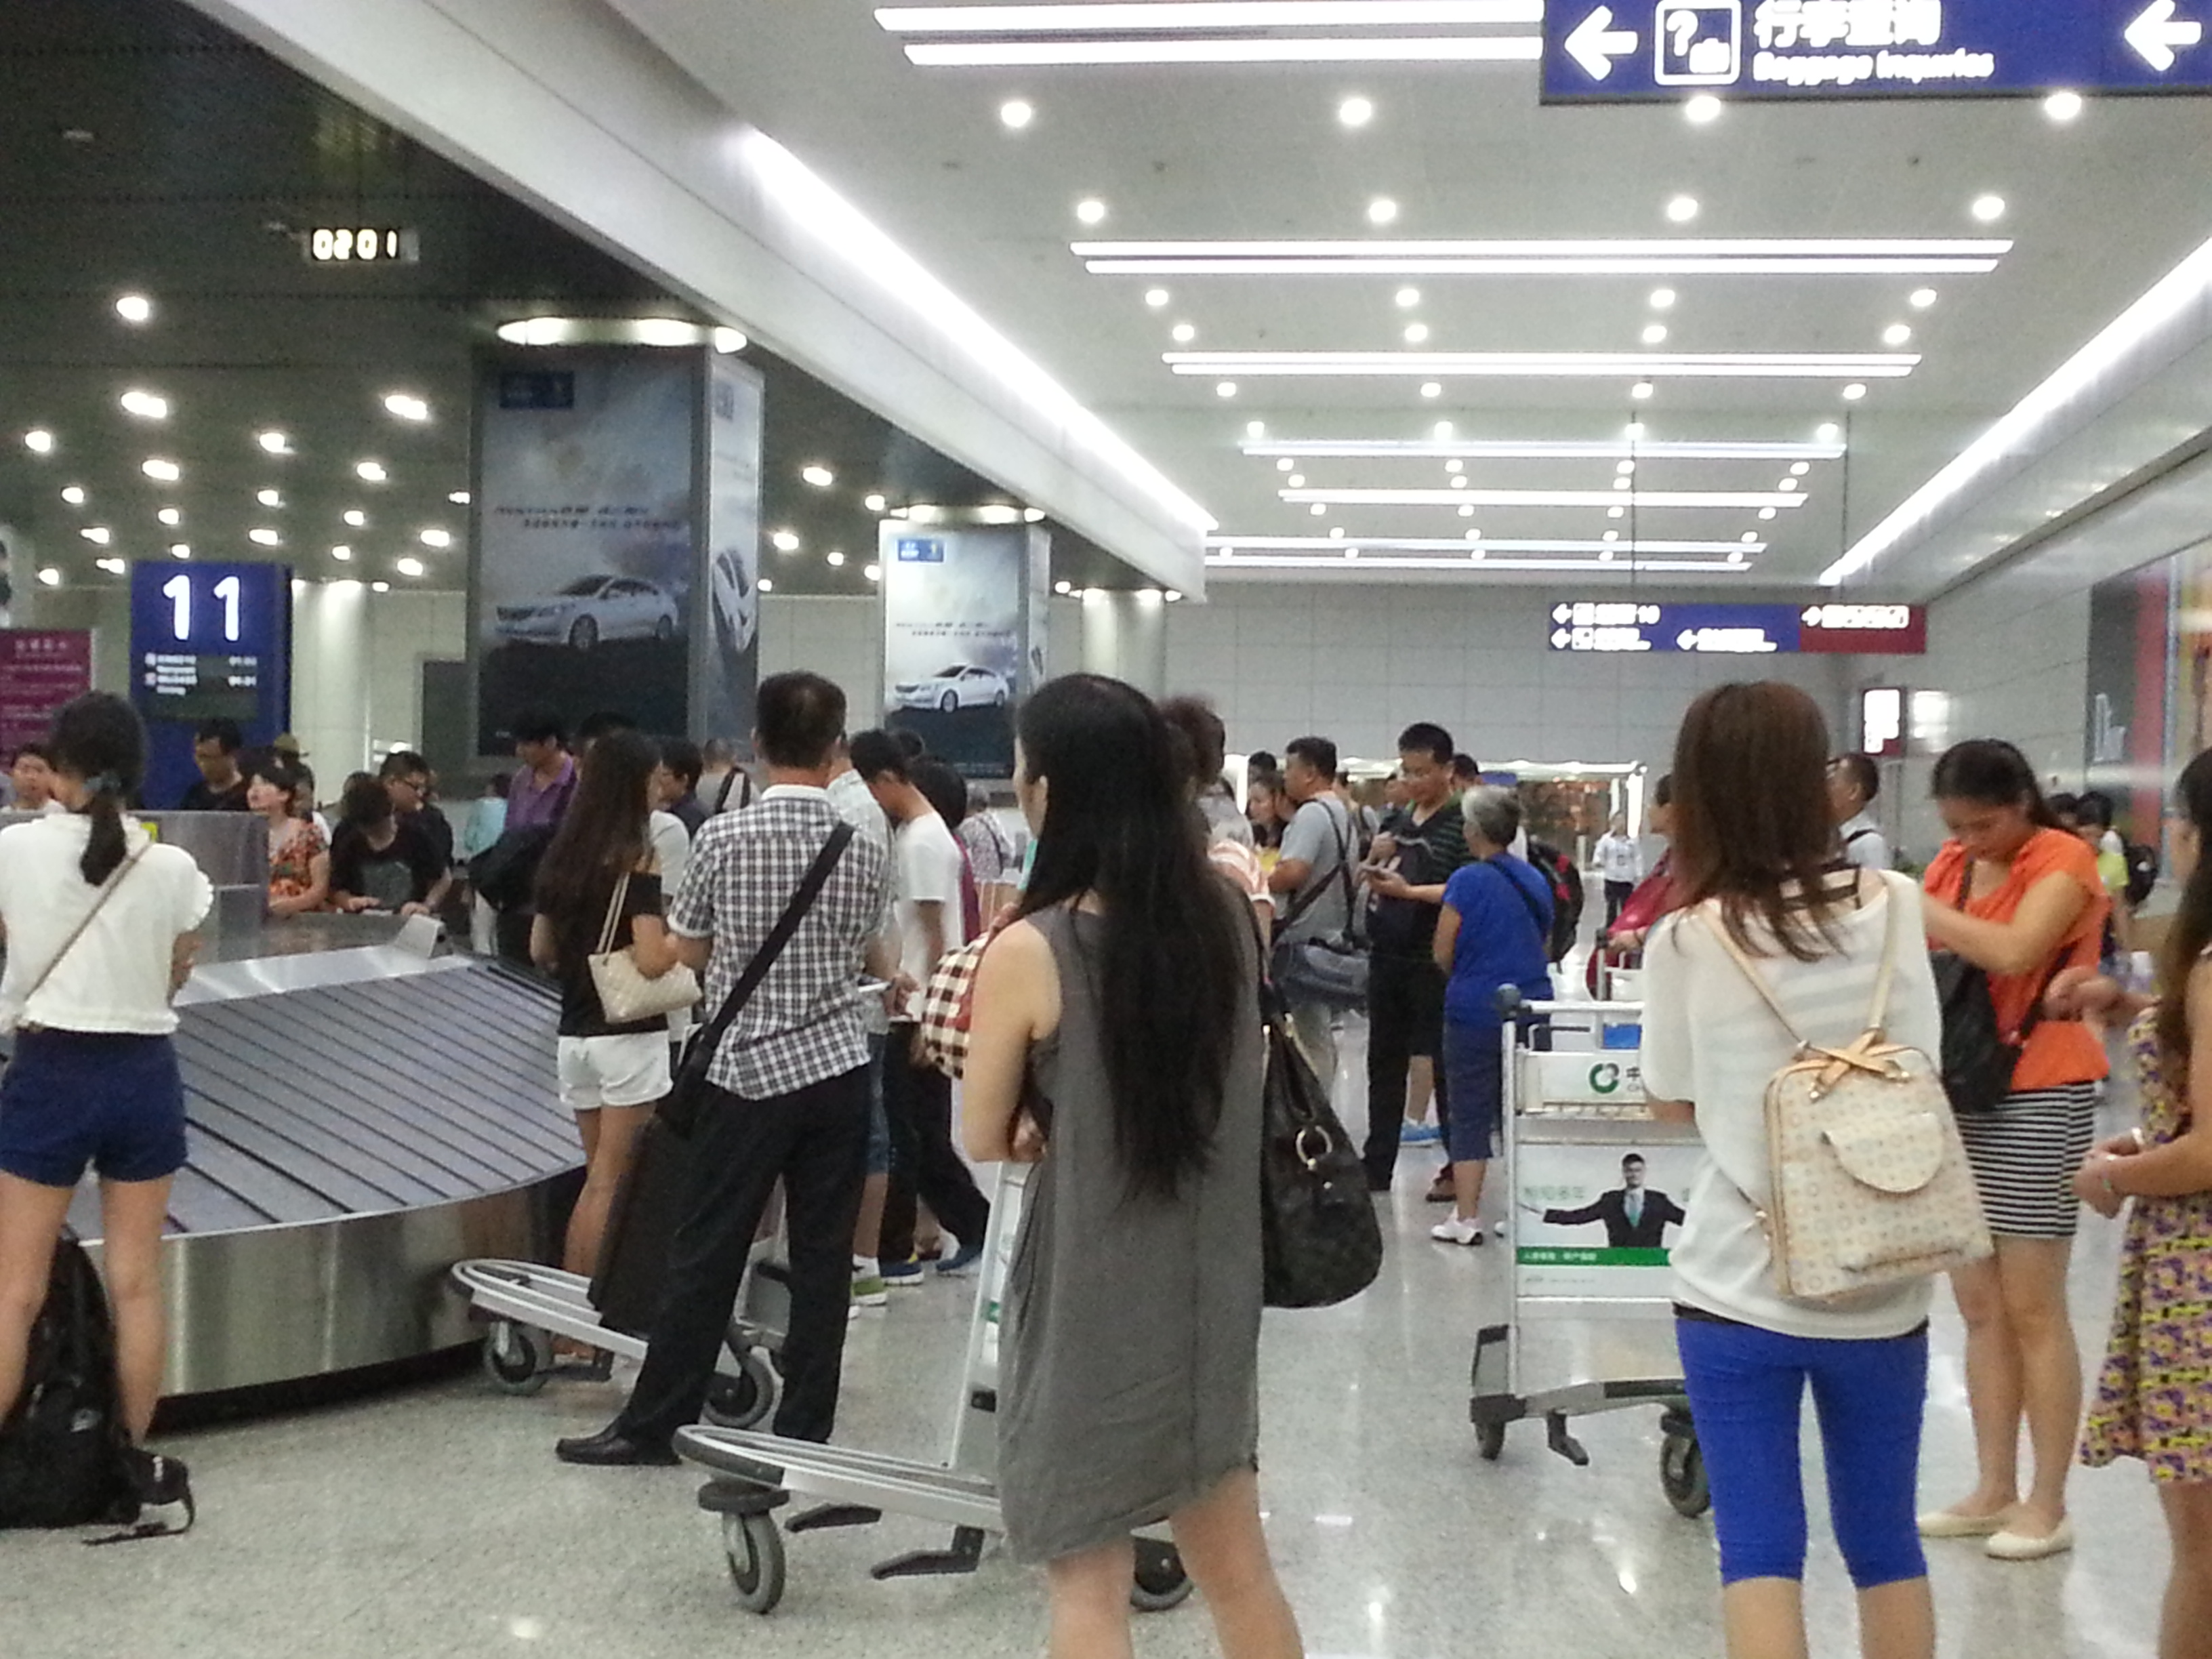 凌晨两点,成都双流国际机场人头攒动,柳州机场与其相比真是弱爆了!